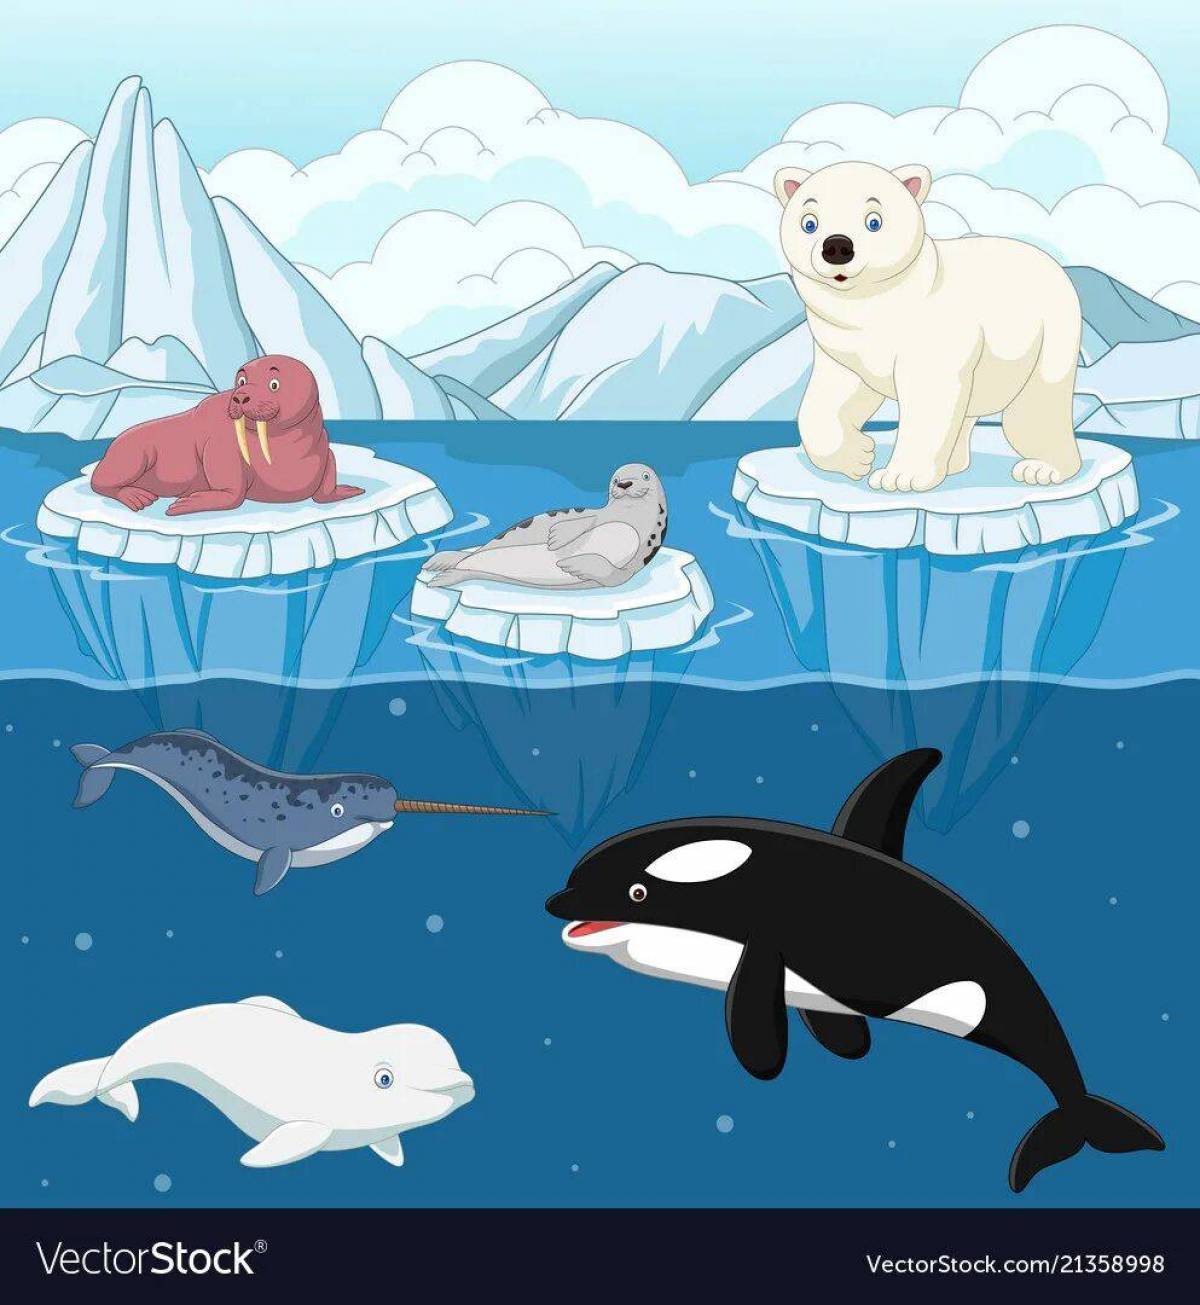 Животные арктики и антарктики для детей #18